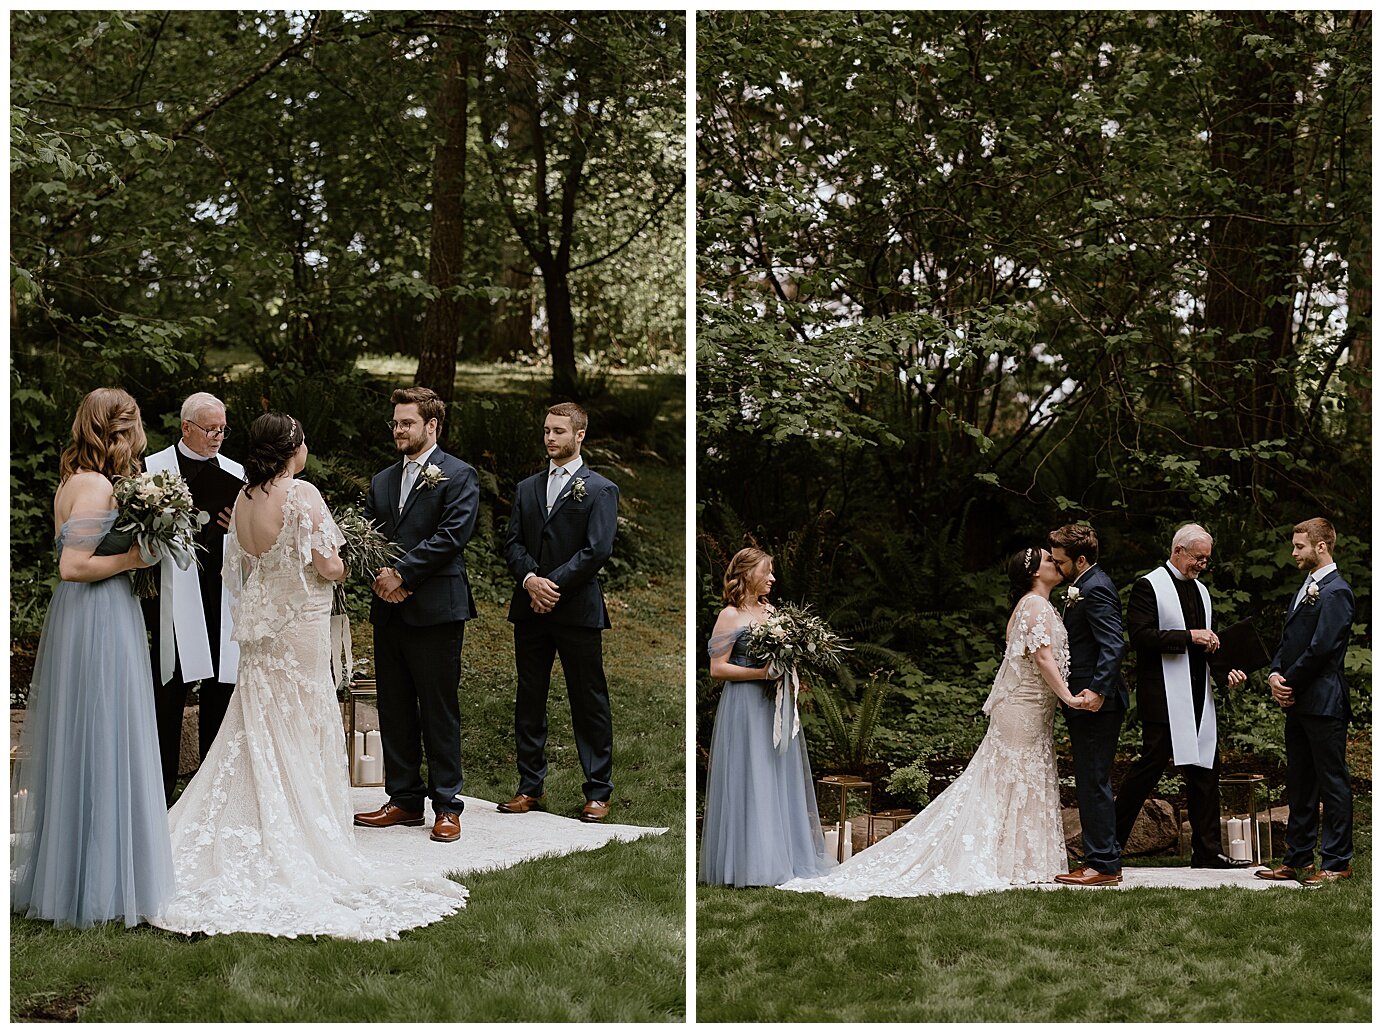 Battle Ground Washington Backyard Wedding - Madeline Rose Photography - Oregon Wedding Photographer_0025.jpg